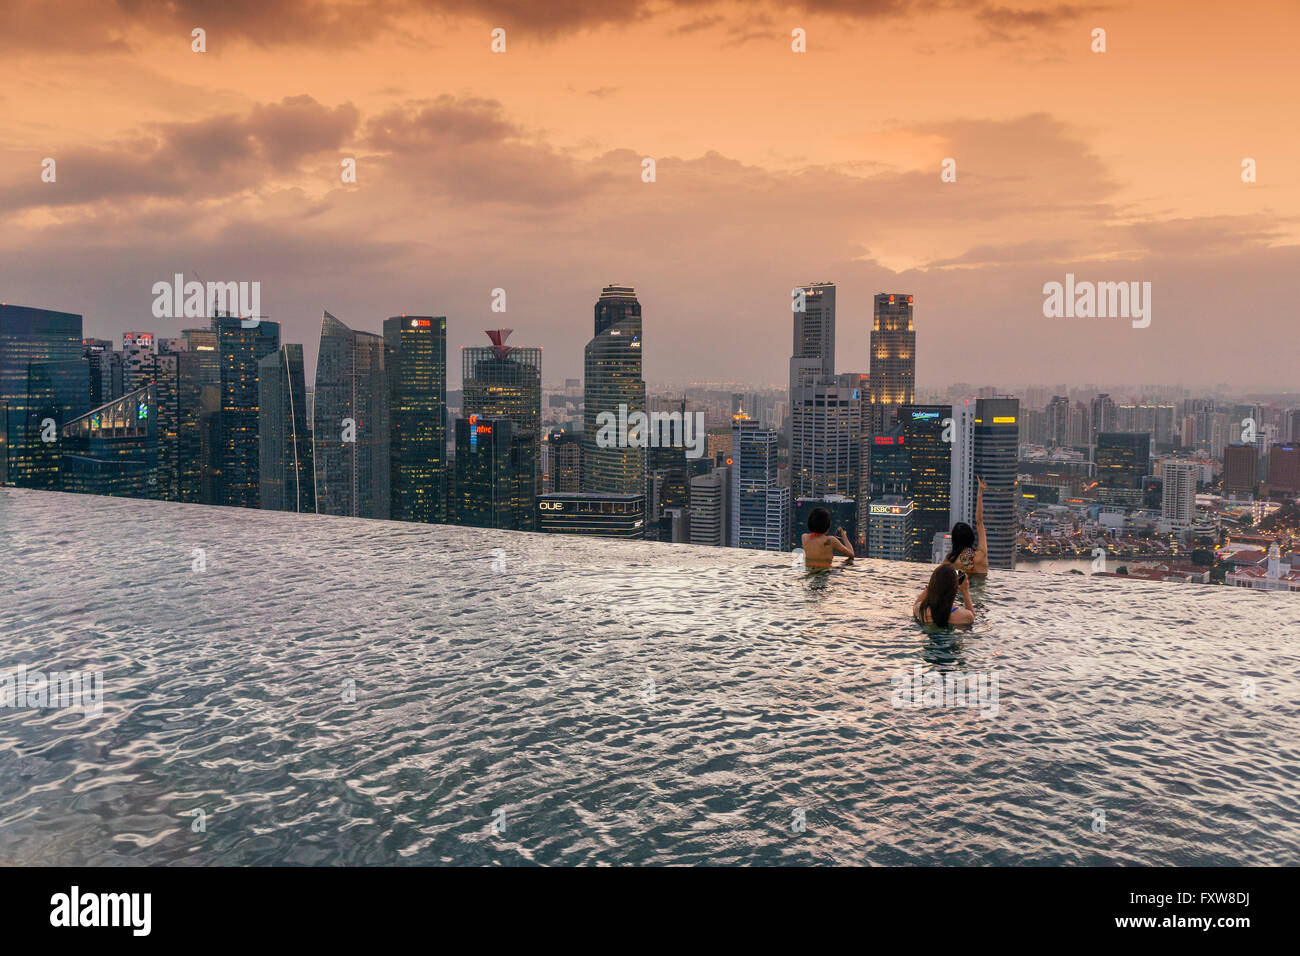 Marina Bay Sands , piscine à débordement, terrasse de toit, Coucher de soleil, d'horizon, les touristes asiatiques, Marina Bay, Singapour, Singapour, Asie Southest, Banque D'Images